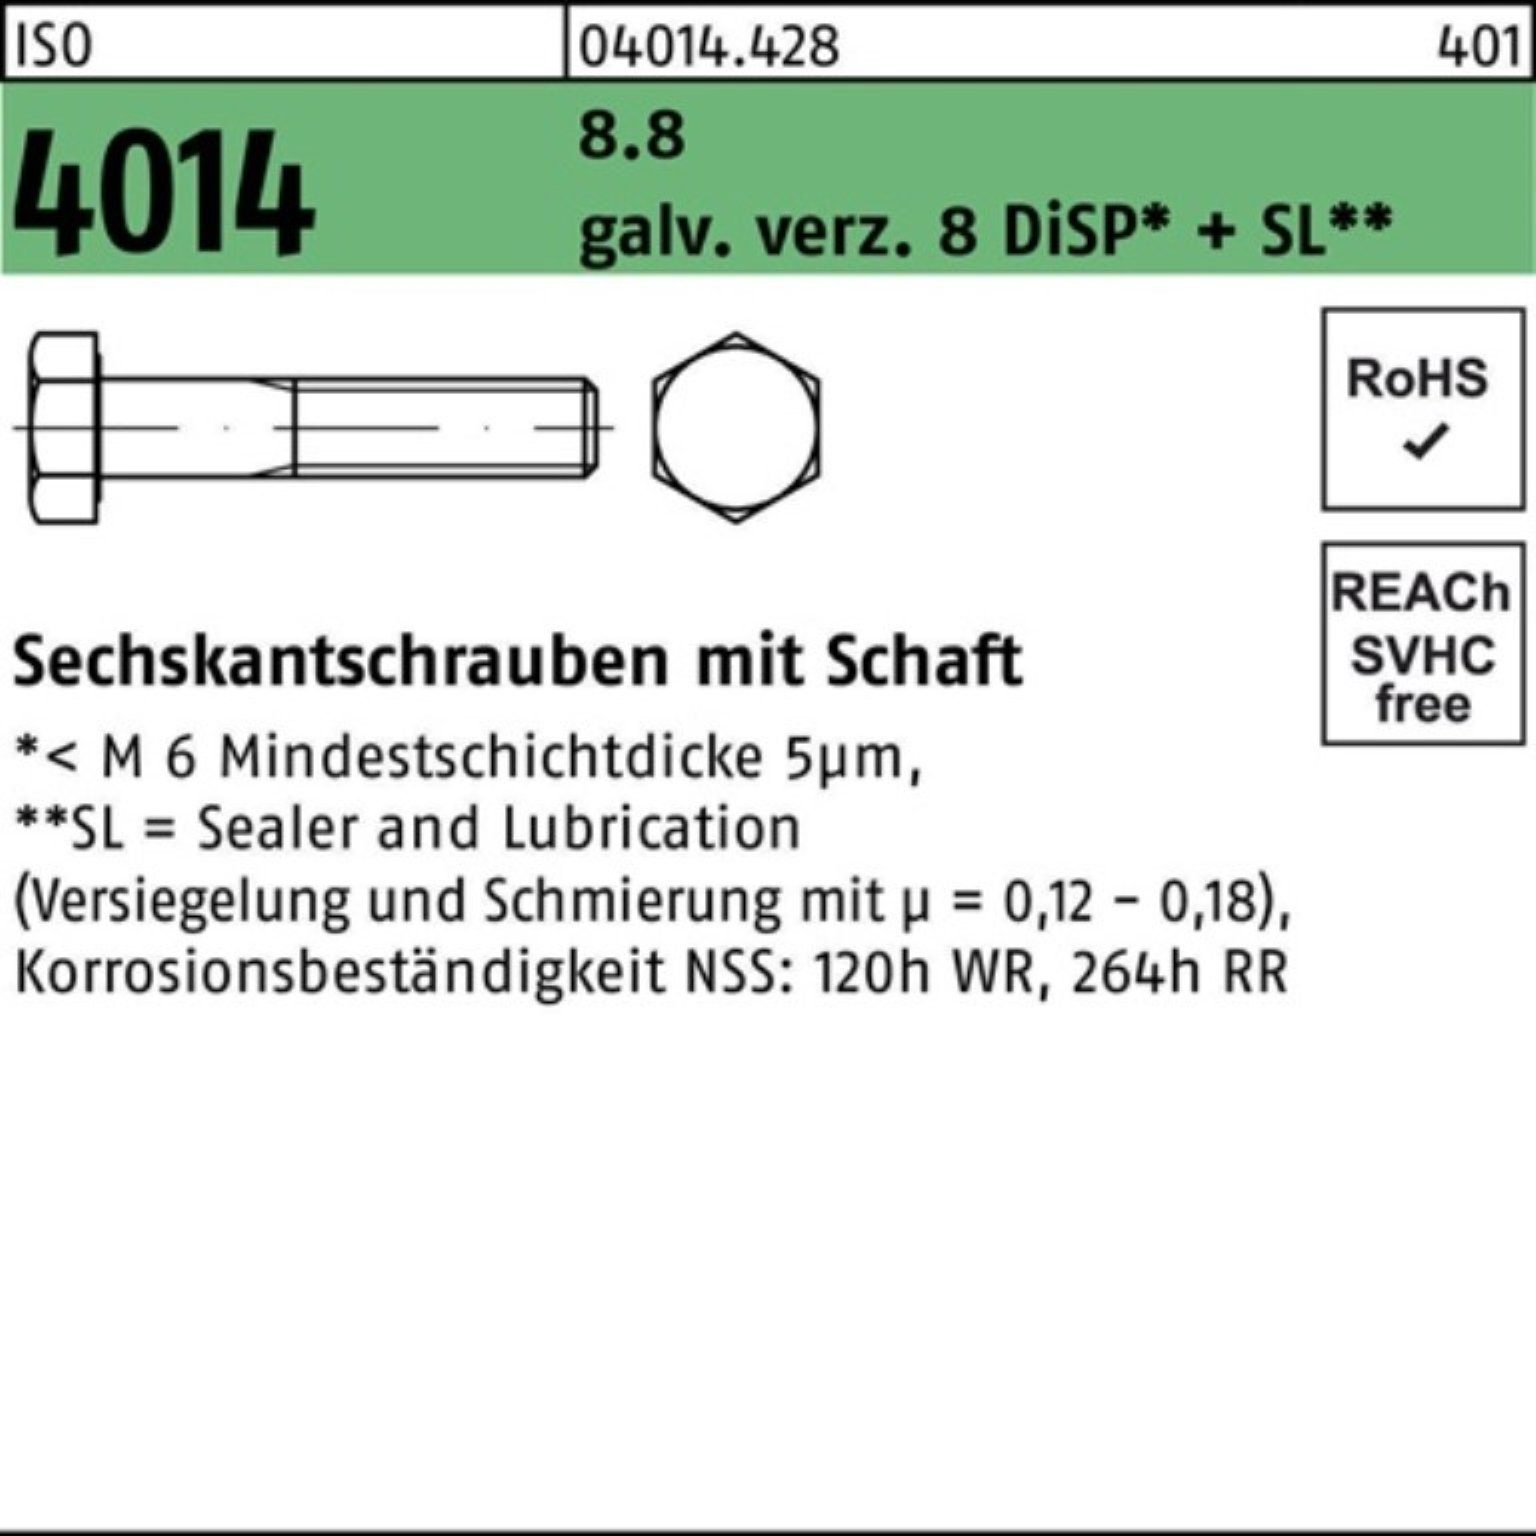 Sechskantschraube 100er Pack Sechskantschraube 4014 Schaft M10x45 8.8 8 ISO Bufab D galv.verz.